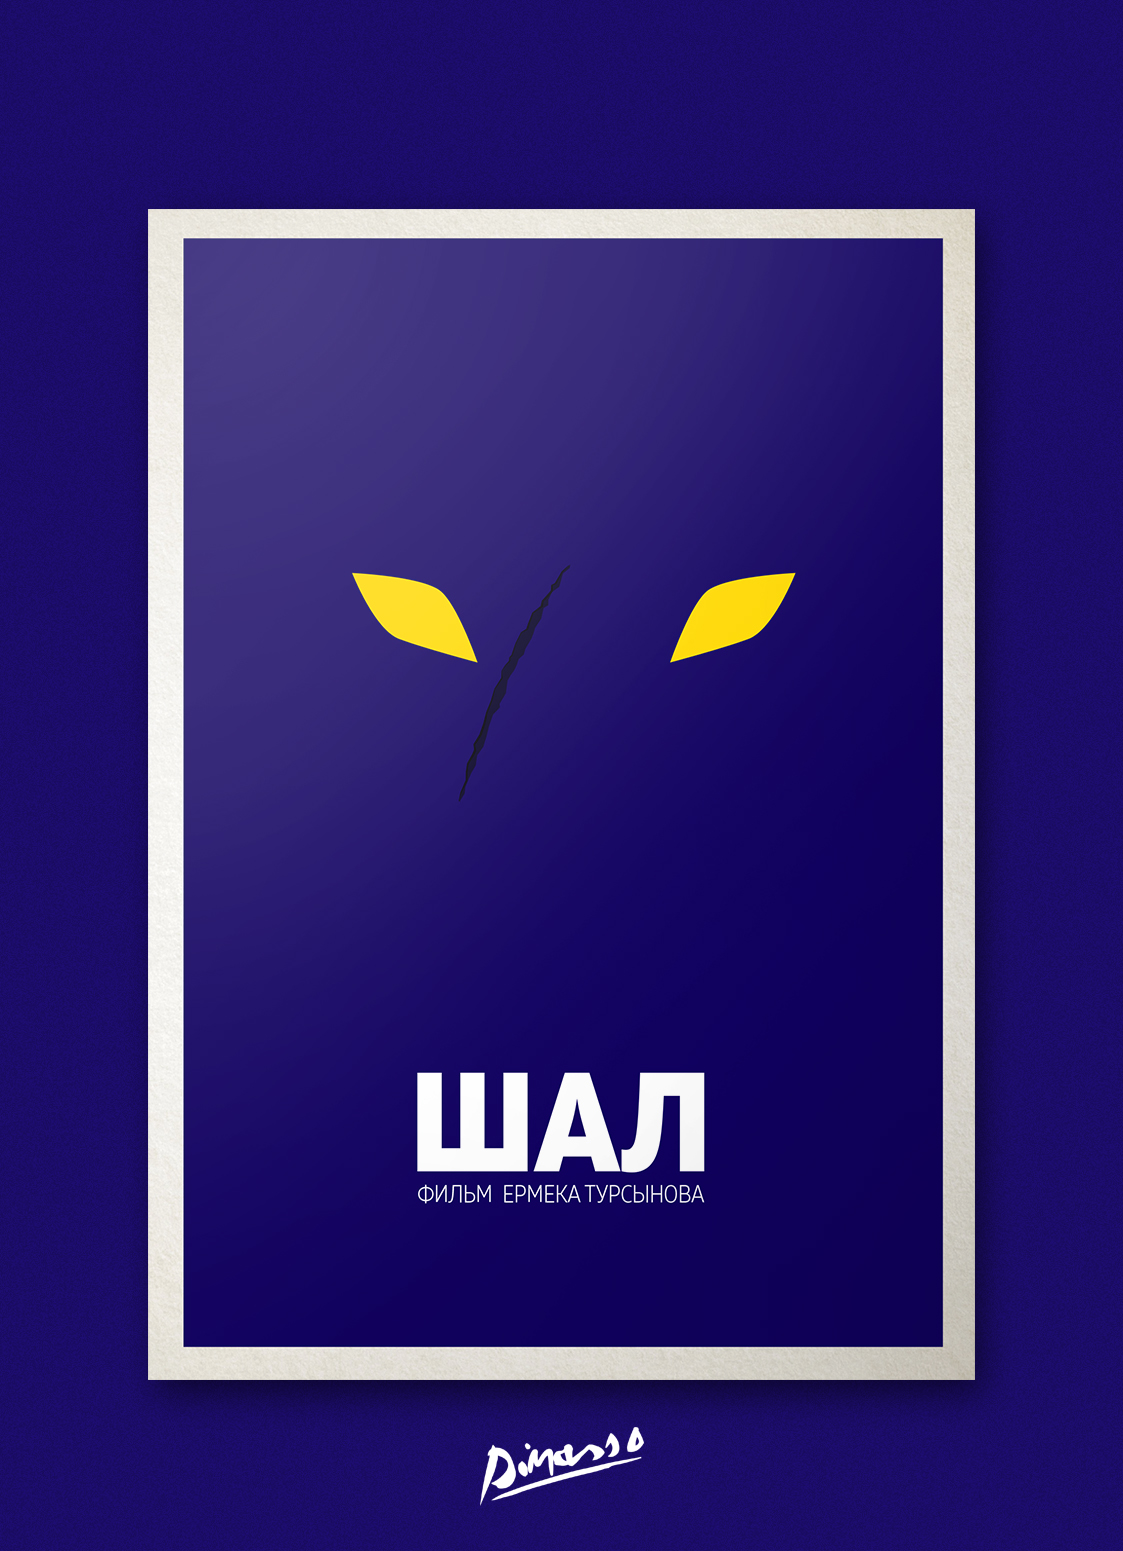 Дизайнер нарисовал постеры для казахстанских фильмов